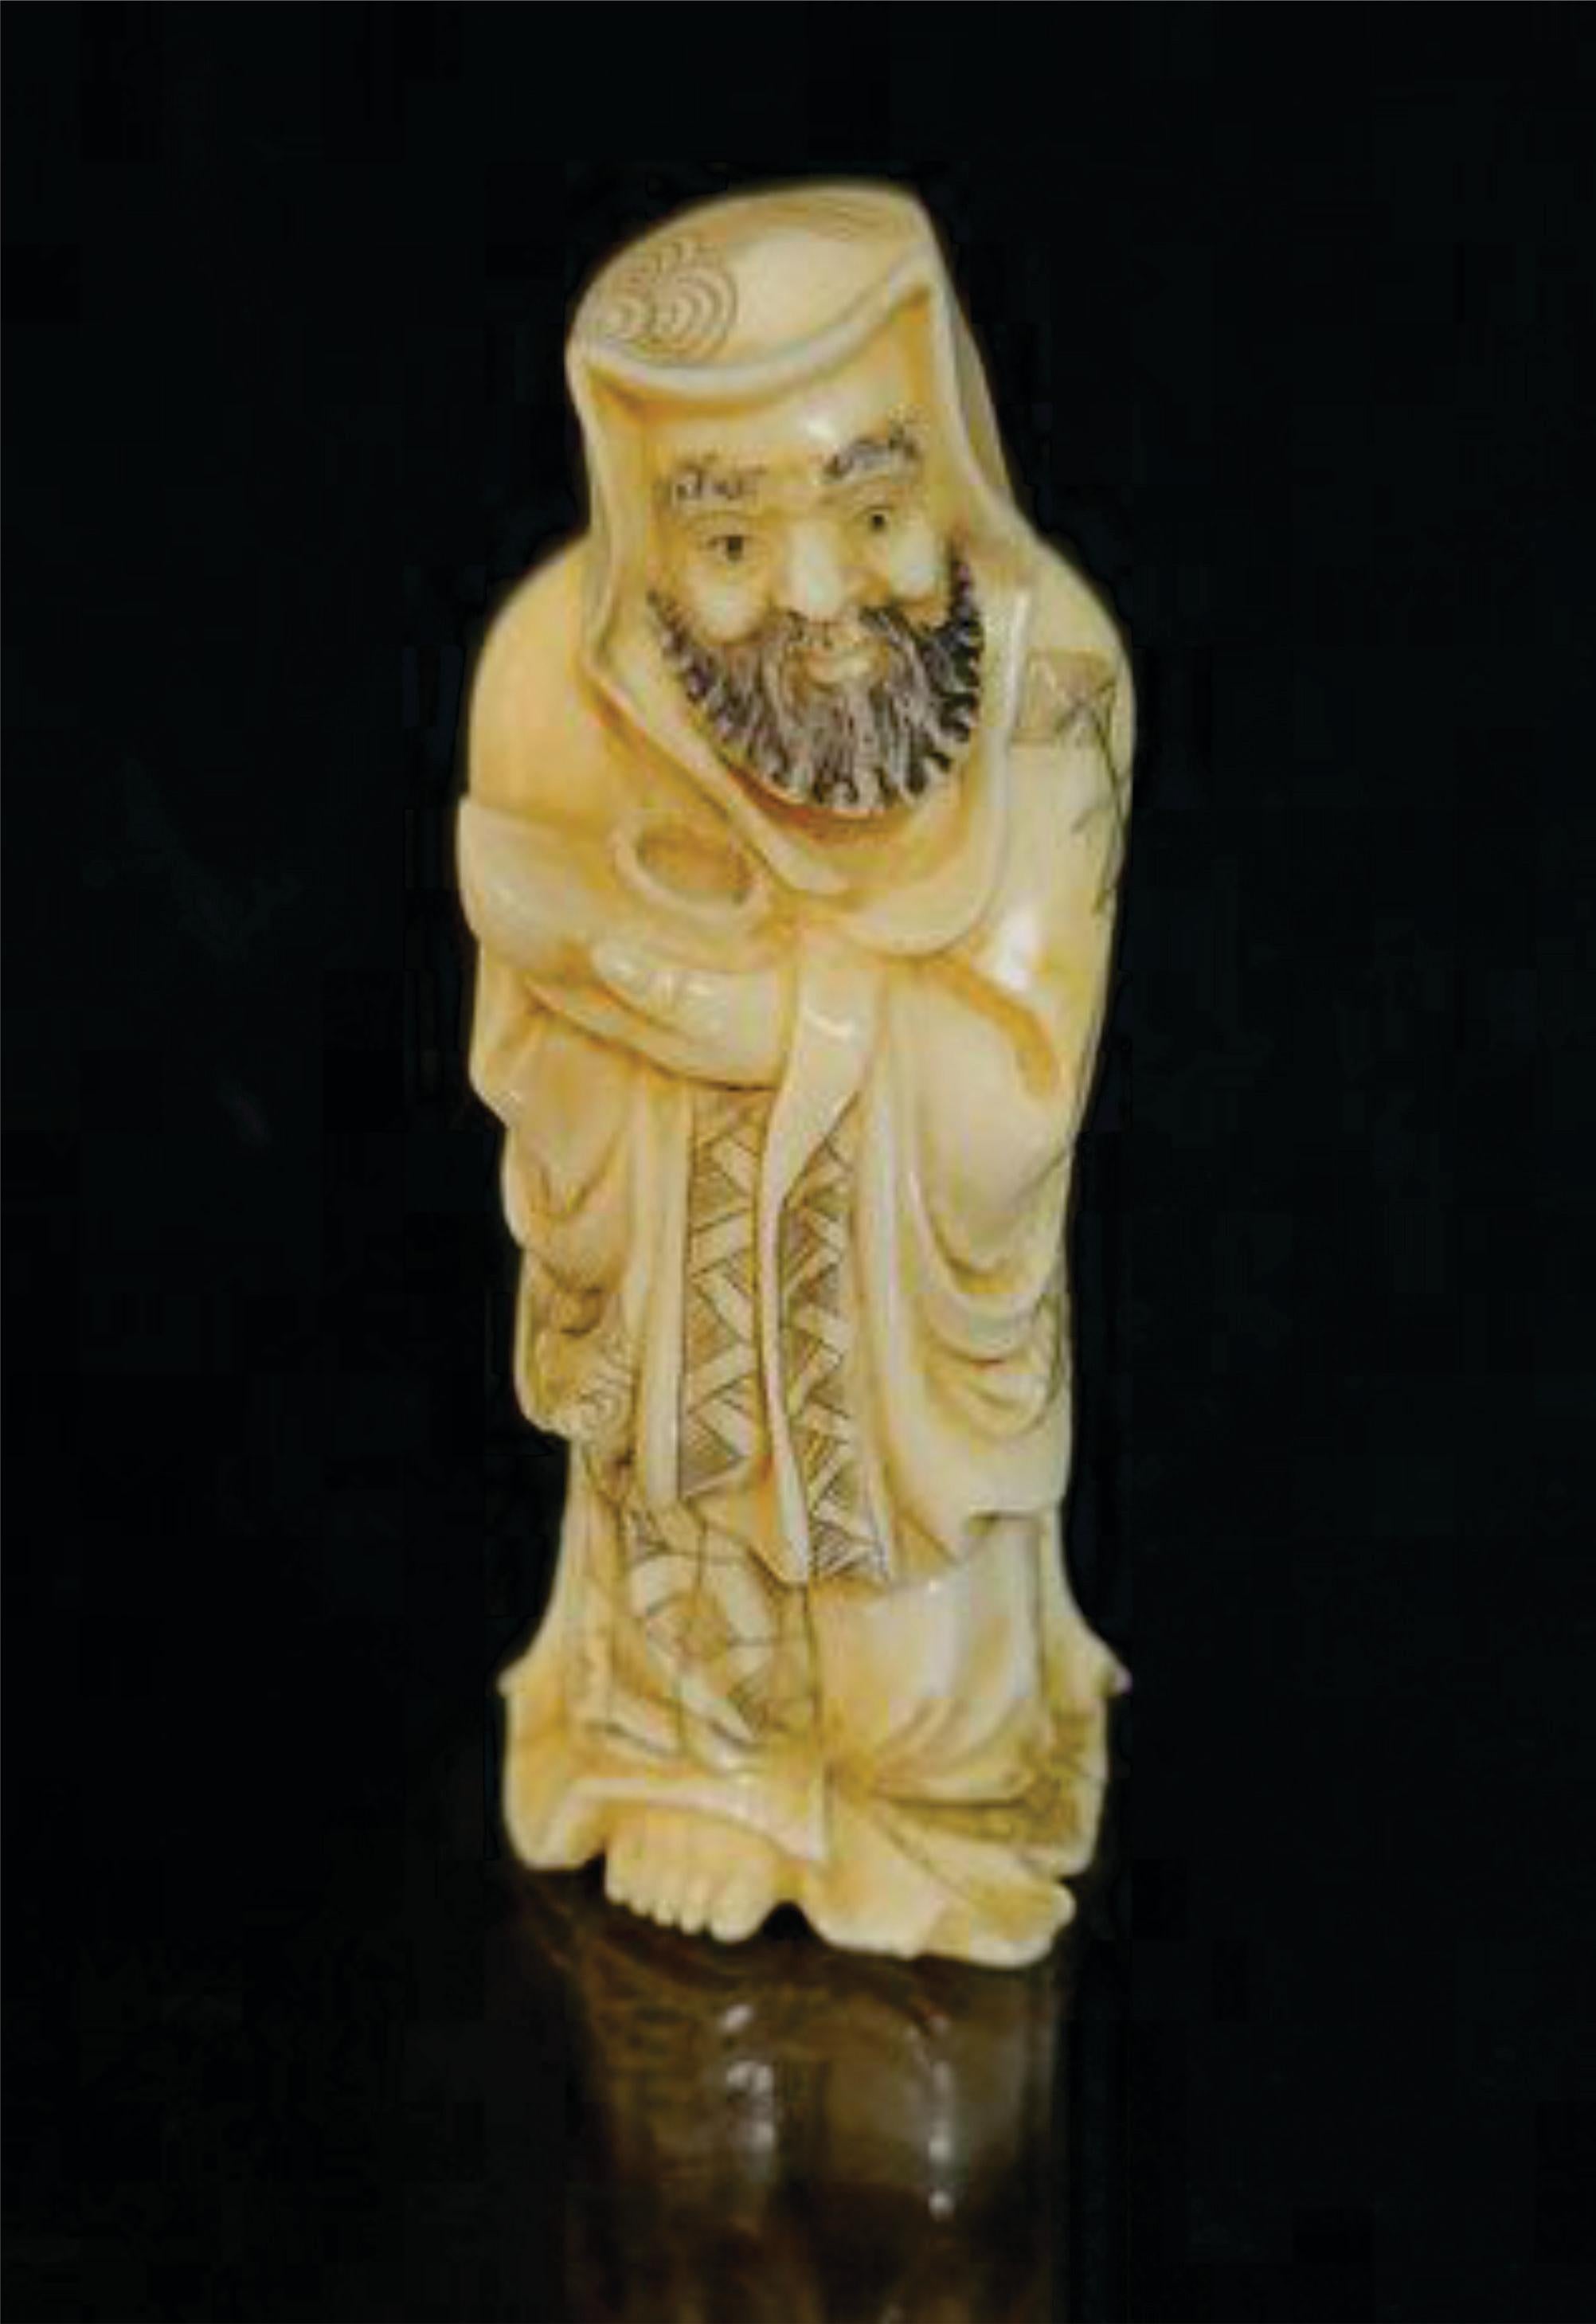 Netsuke Figure japonaise en matériaux mixtes sculptée à la main, un sage tenant un trésor - signée par Shozan, de la période Meiji. Ric.NA006

Une figurine en ivoire véritablement sculptée à la main, Un homme sage tenant un trésor, présente des